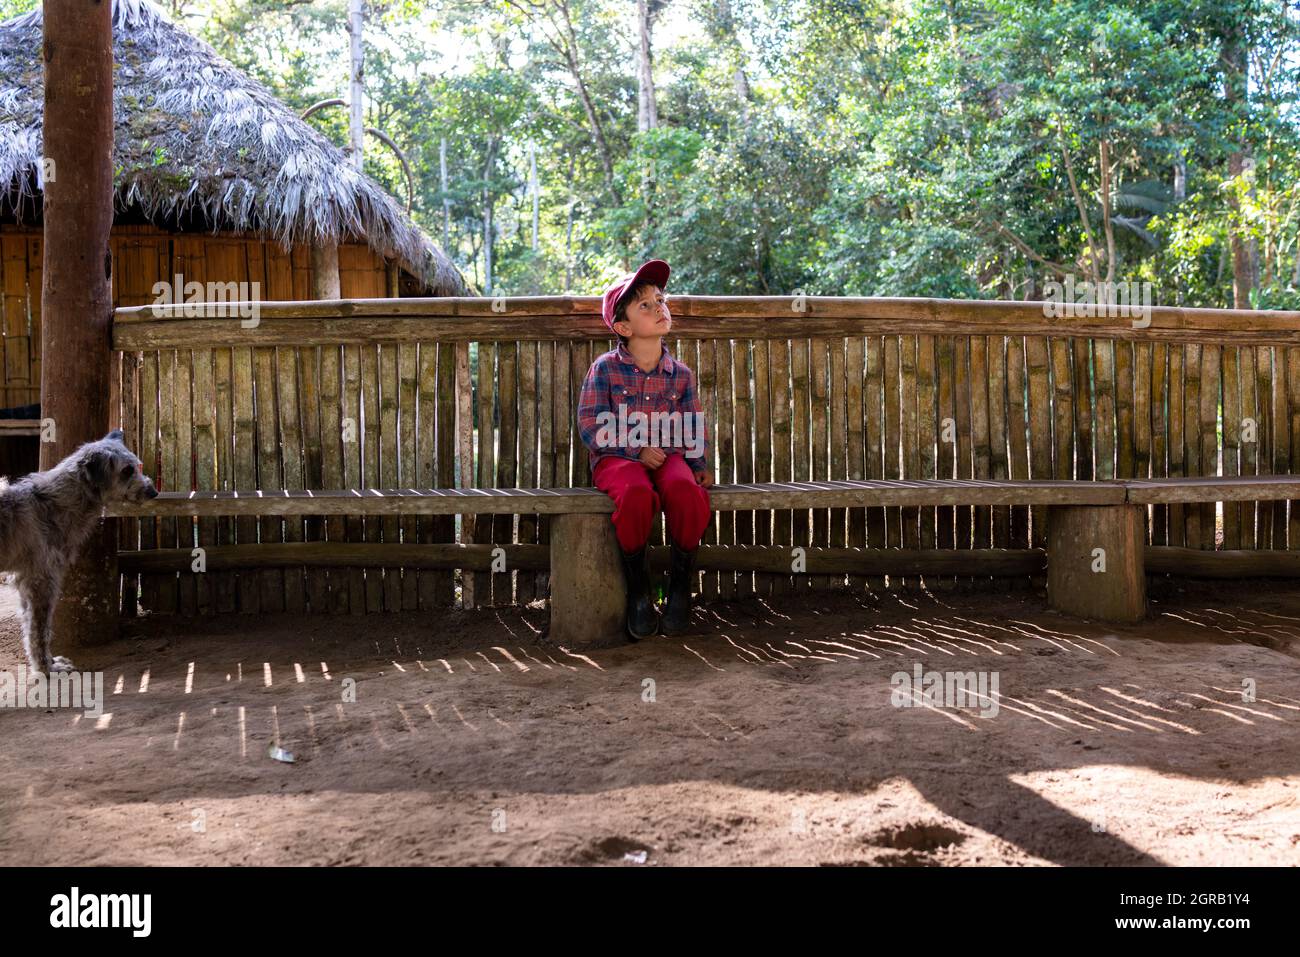 Longitud completa de BPY En pie por Fence contra los árboles en la aldea indígena Foto de stock